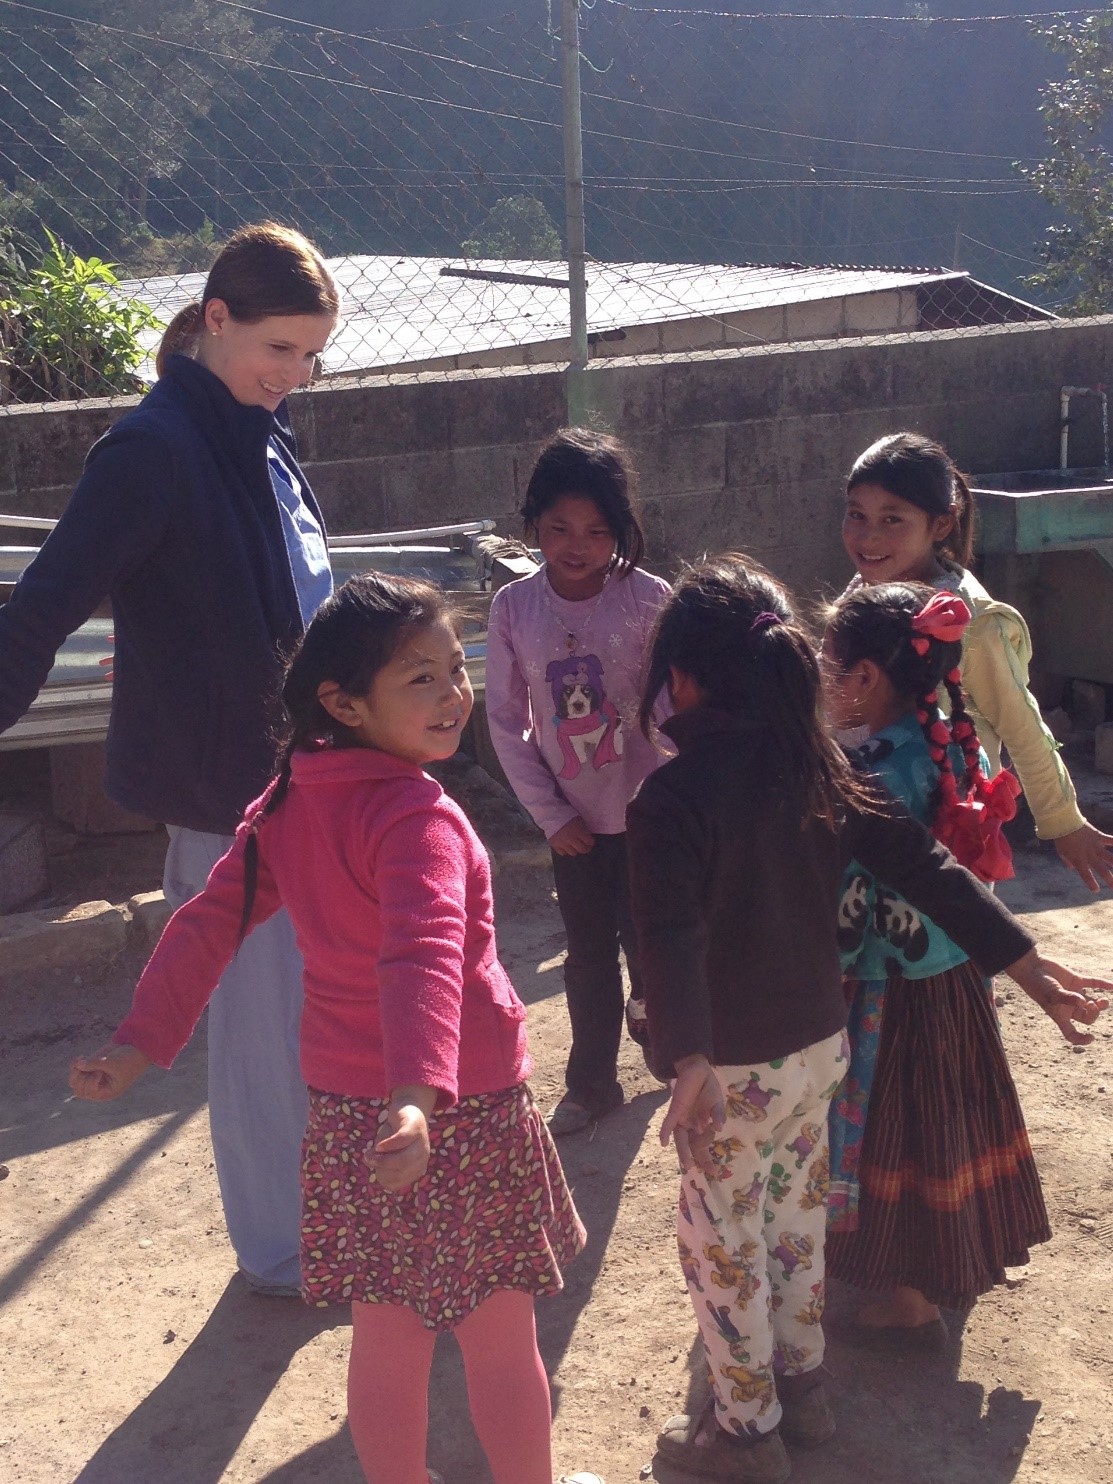 Guatemala - Kelly Pekala playing with children